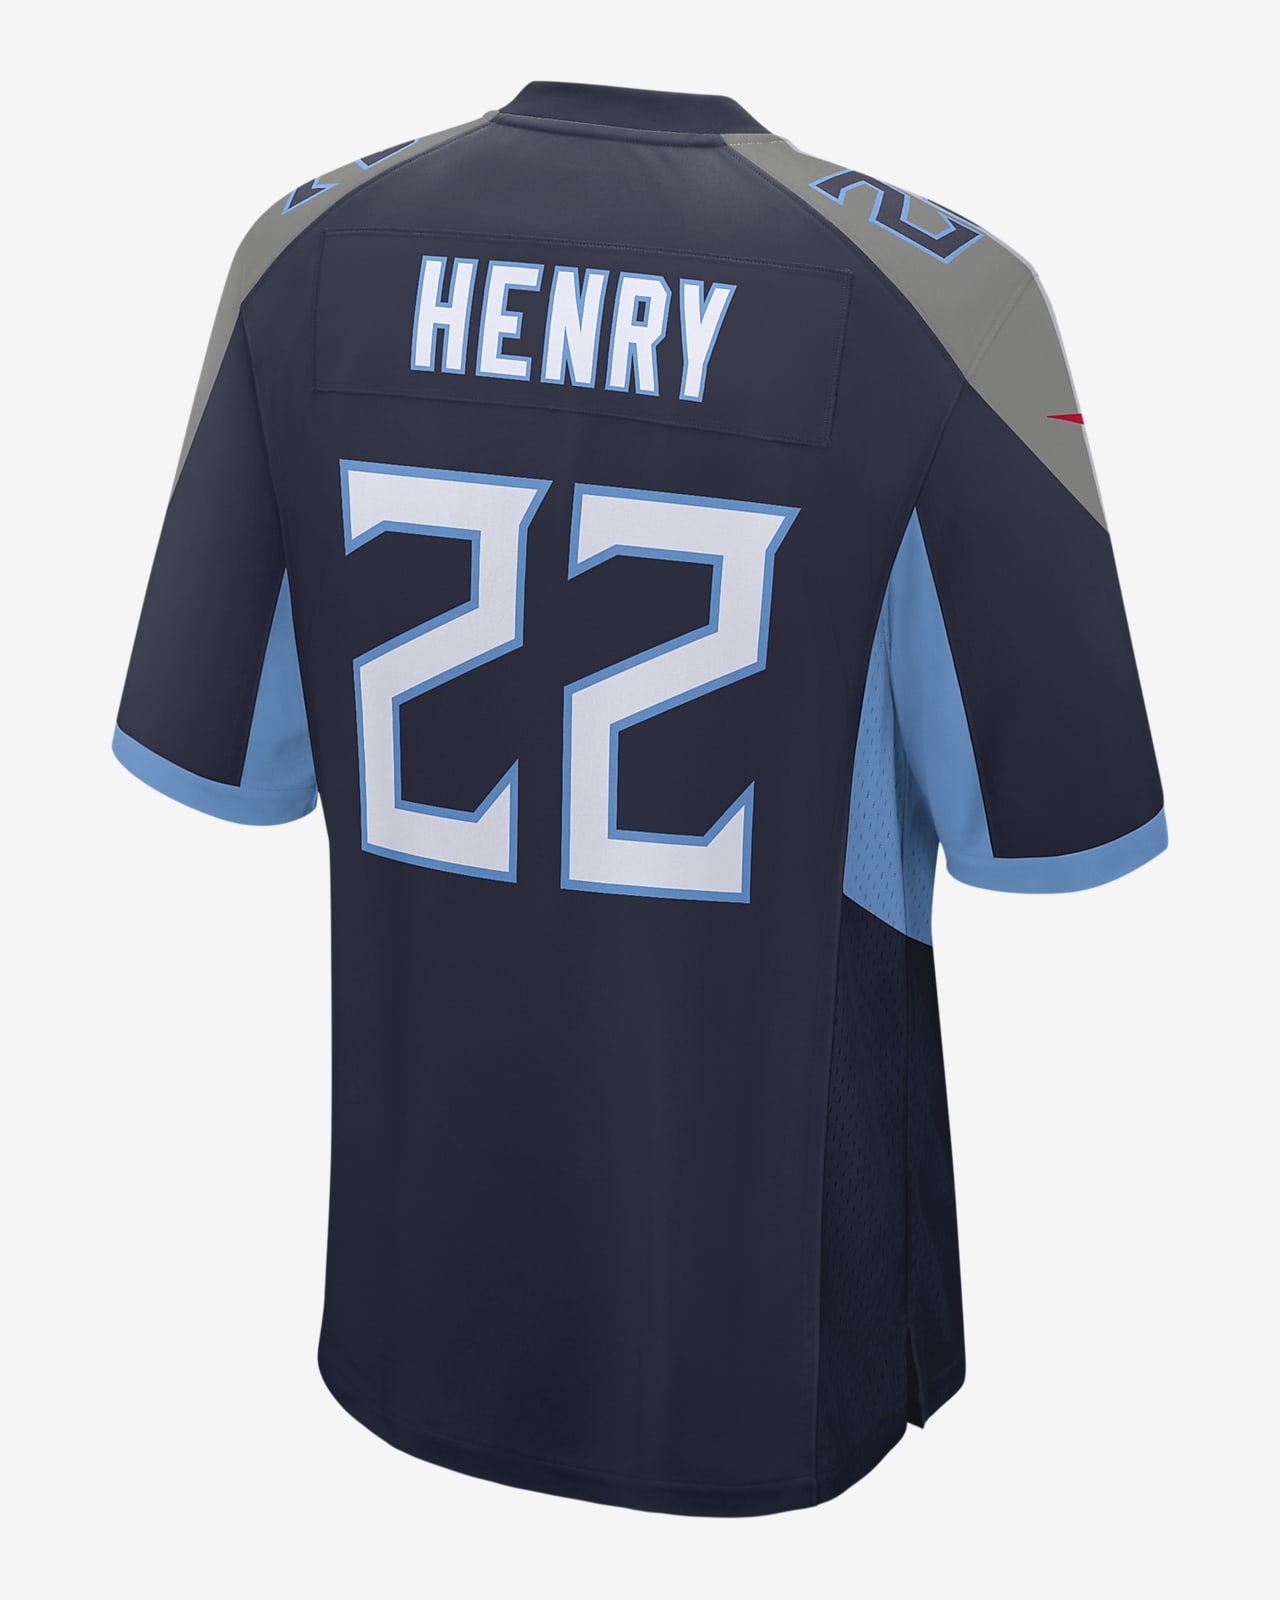 Derrick Henry Men's Game White Navy Light Blue Jersey Titans 